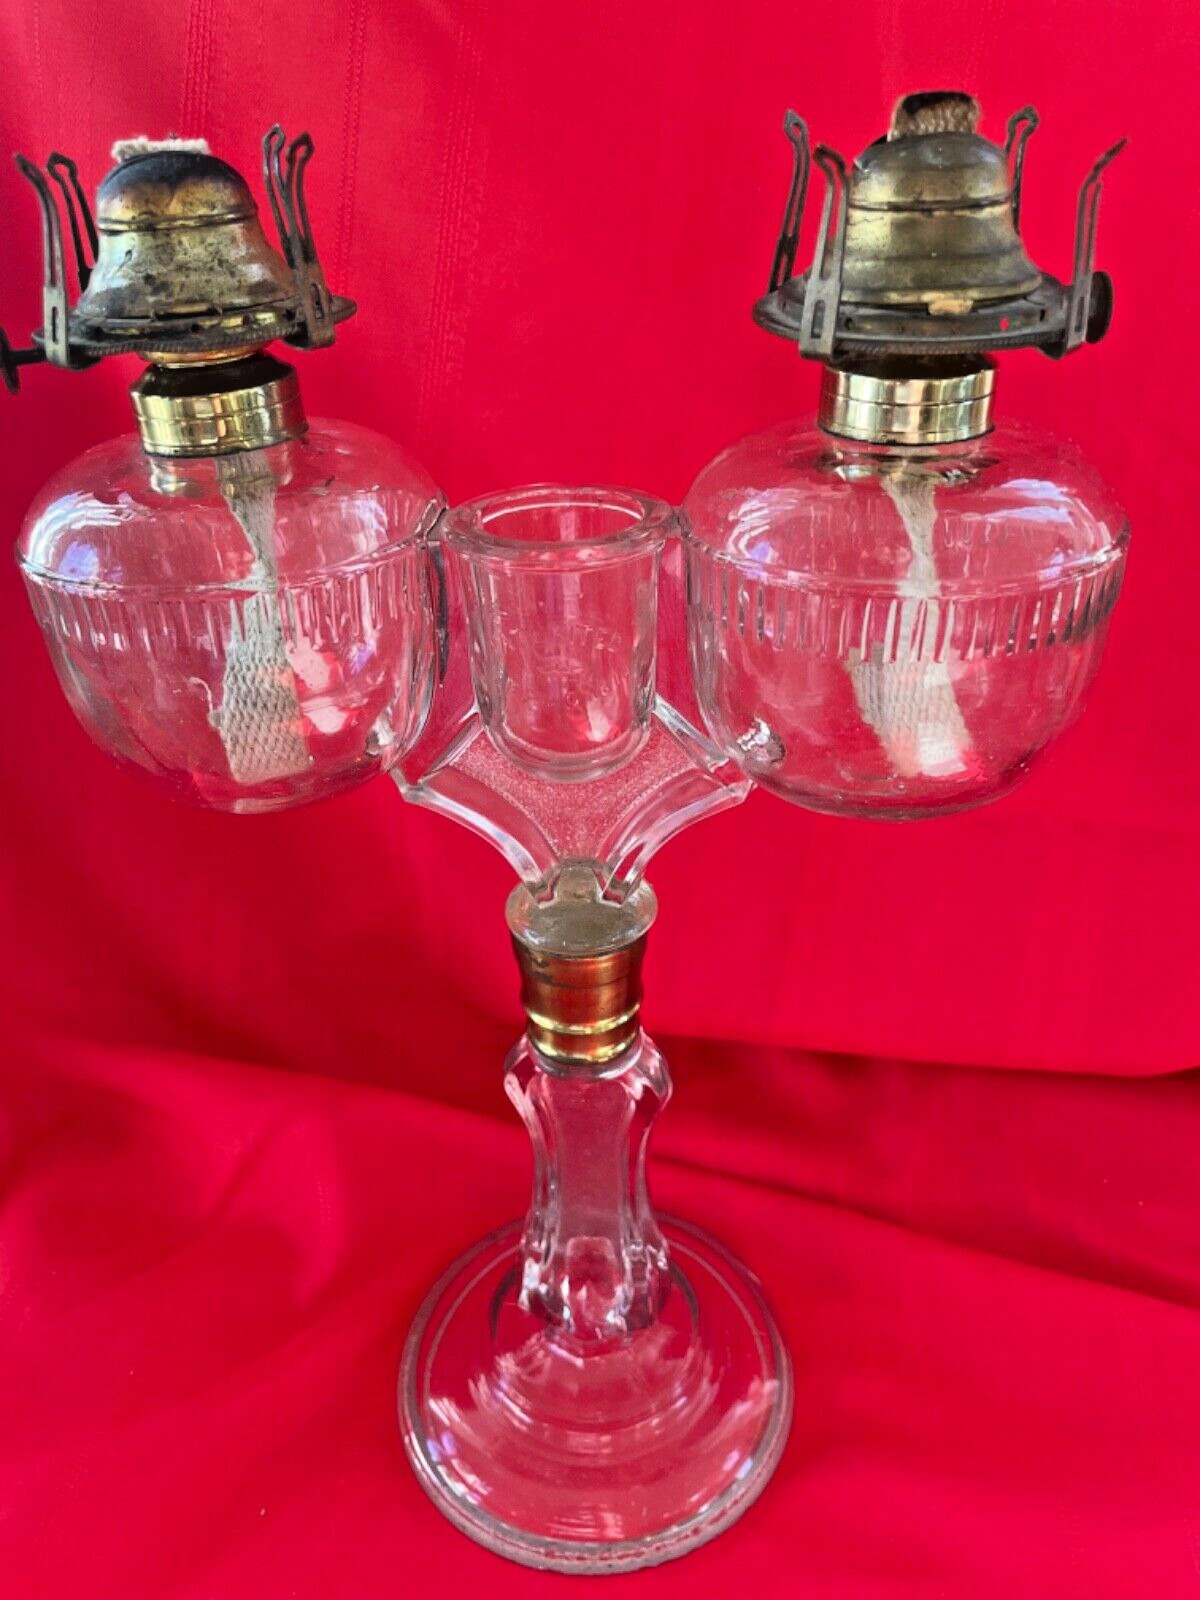 Antique 1870 RARE Signed Ripley Wedding Oil Lamp Kerosene #1 Oil Burners Wicks